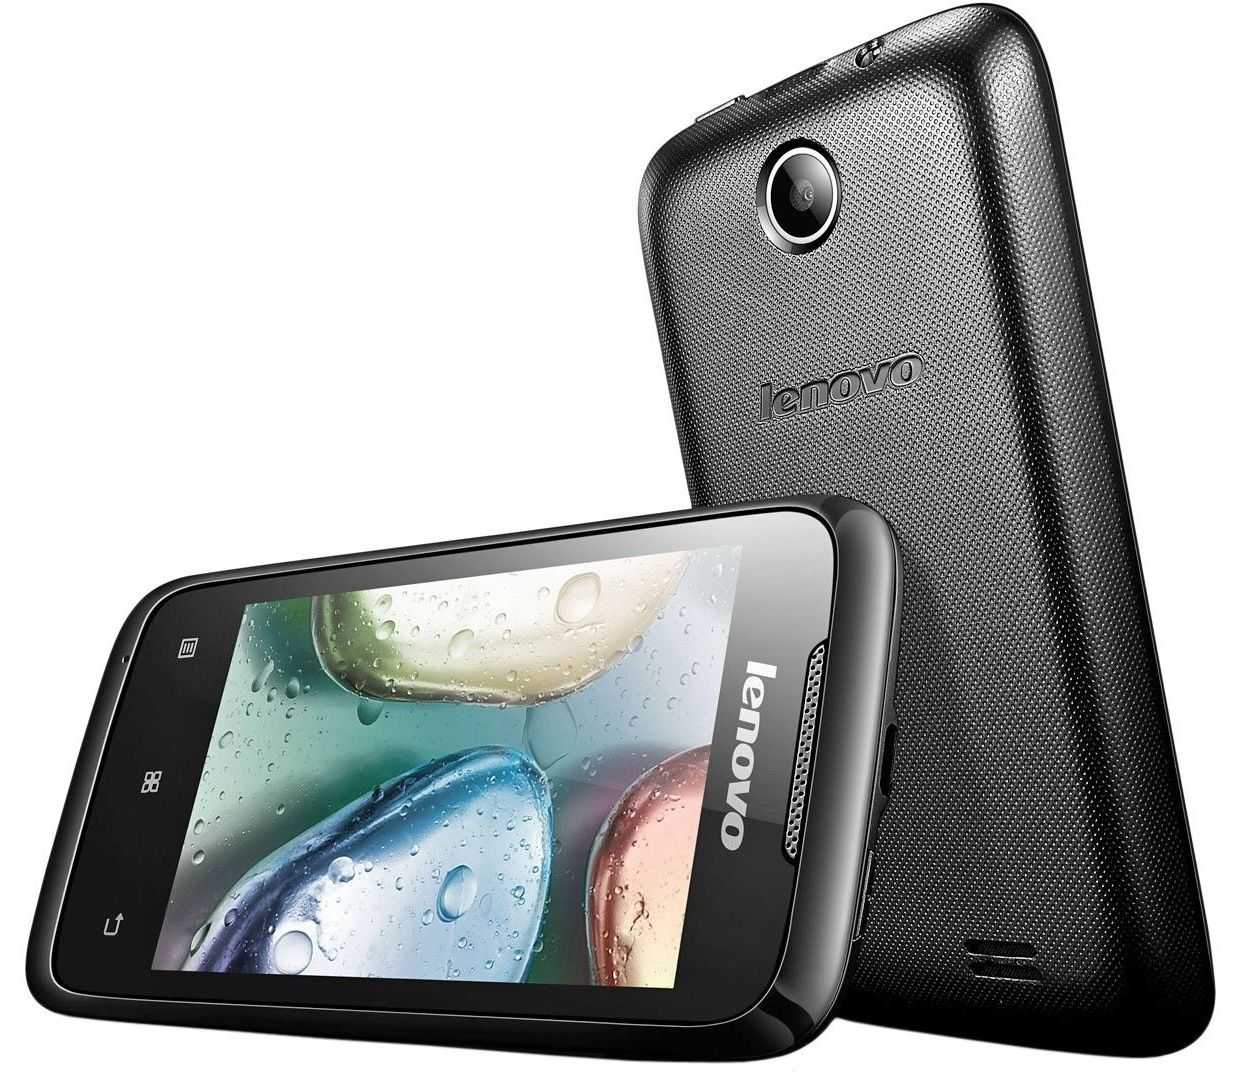 Мобильный телефон Lenovo A60 - подробные характеристики обзоры видео фото Цены в интернет-магазинах где можно купить мобильный телефон Lenovo A60